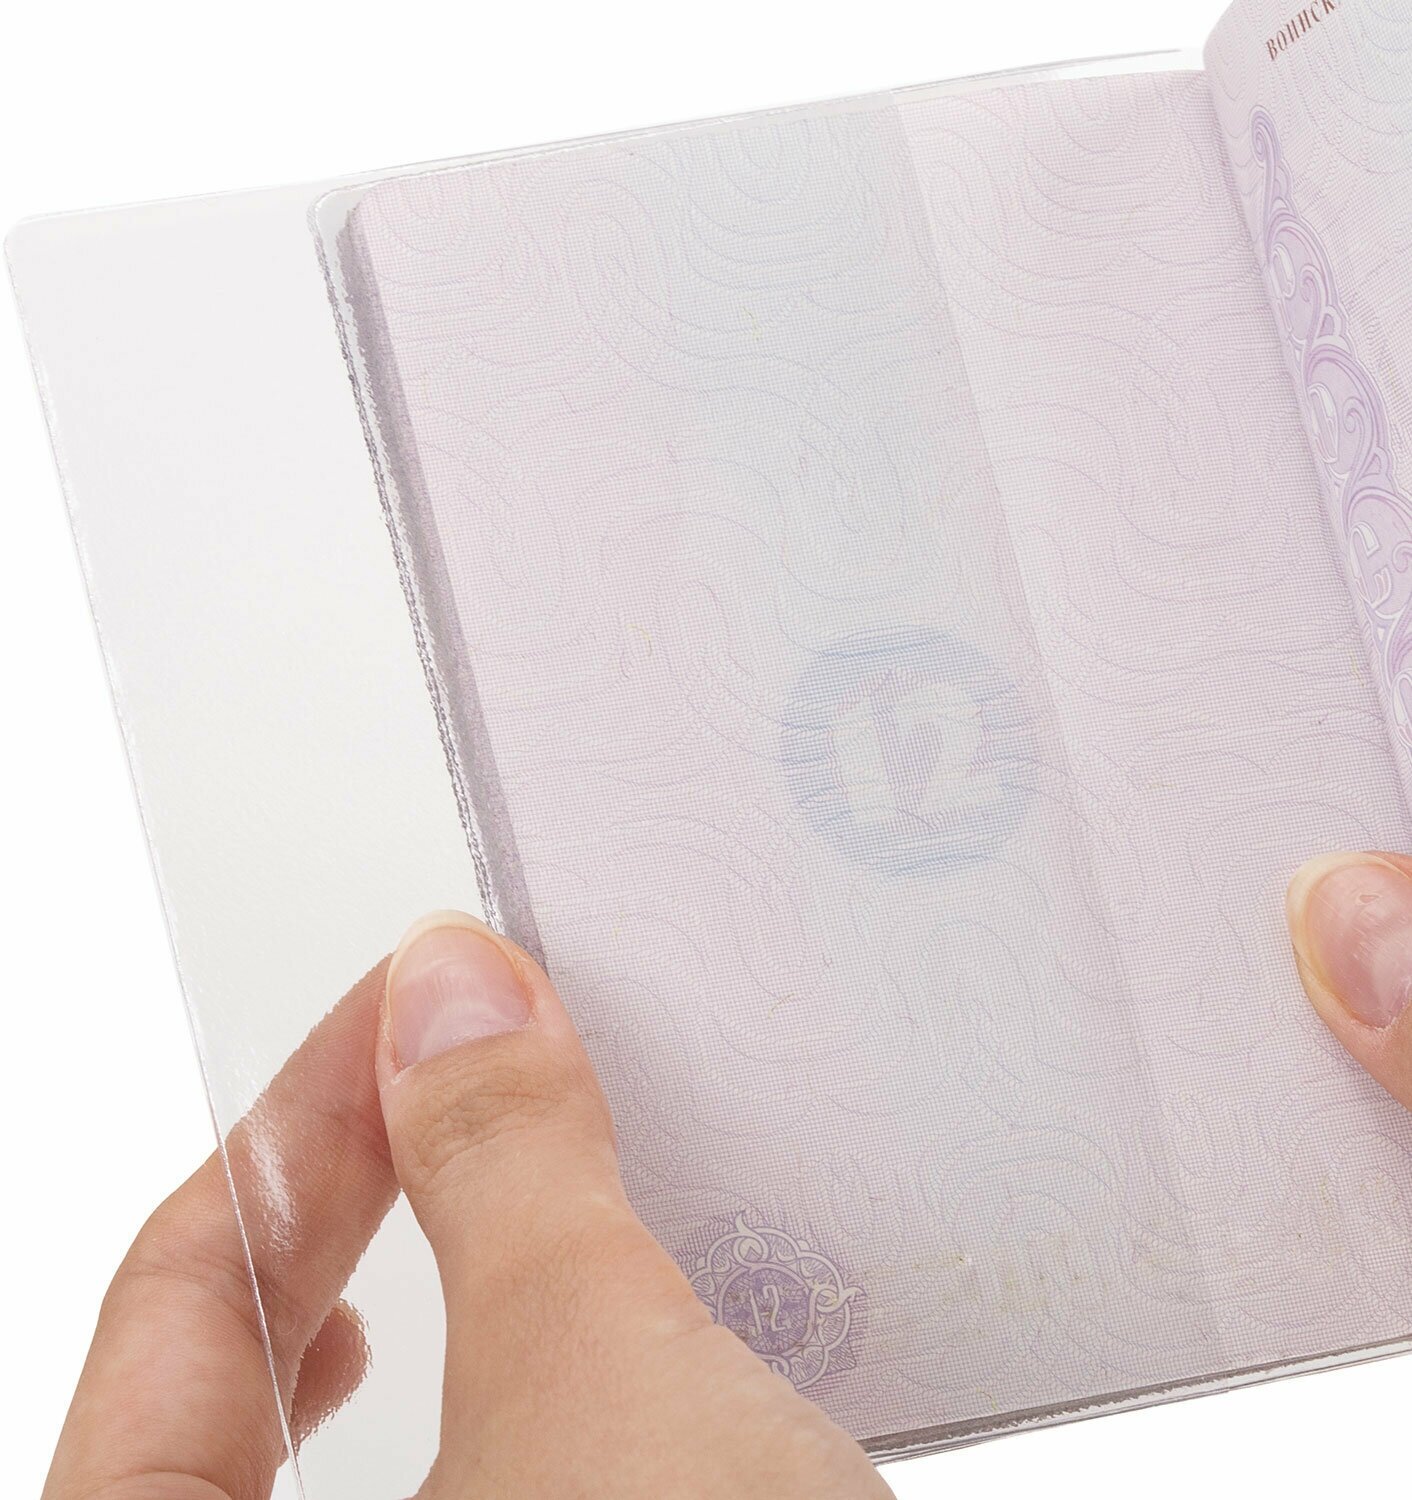 Обложка-чехол для защиты каждой страницы паспорта комплект 20 штук, ПВХ, прозрачная, STAFF, 237964, - Комплект 5 шт.(компл.)